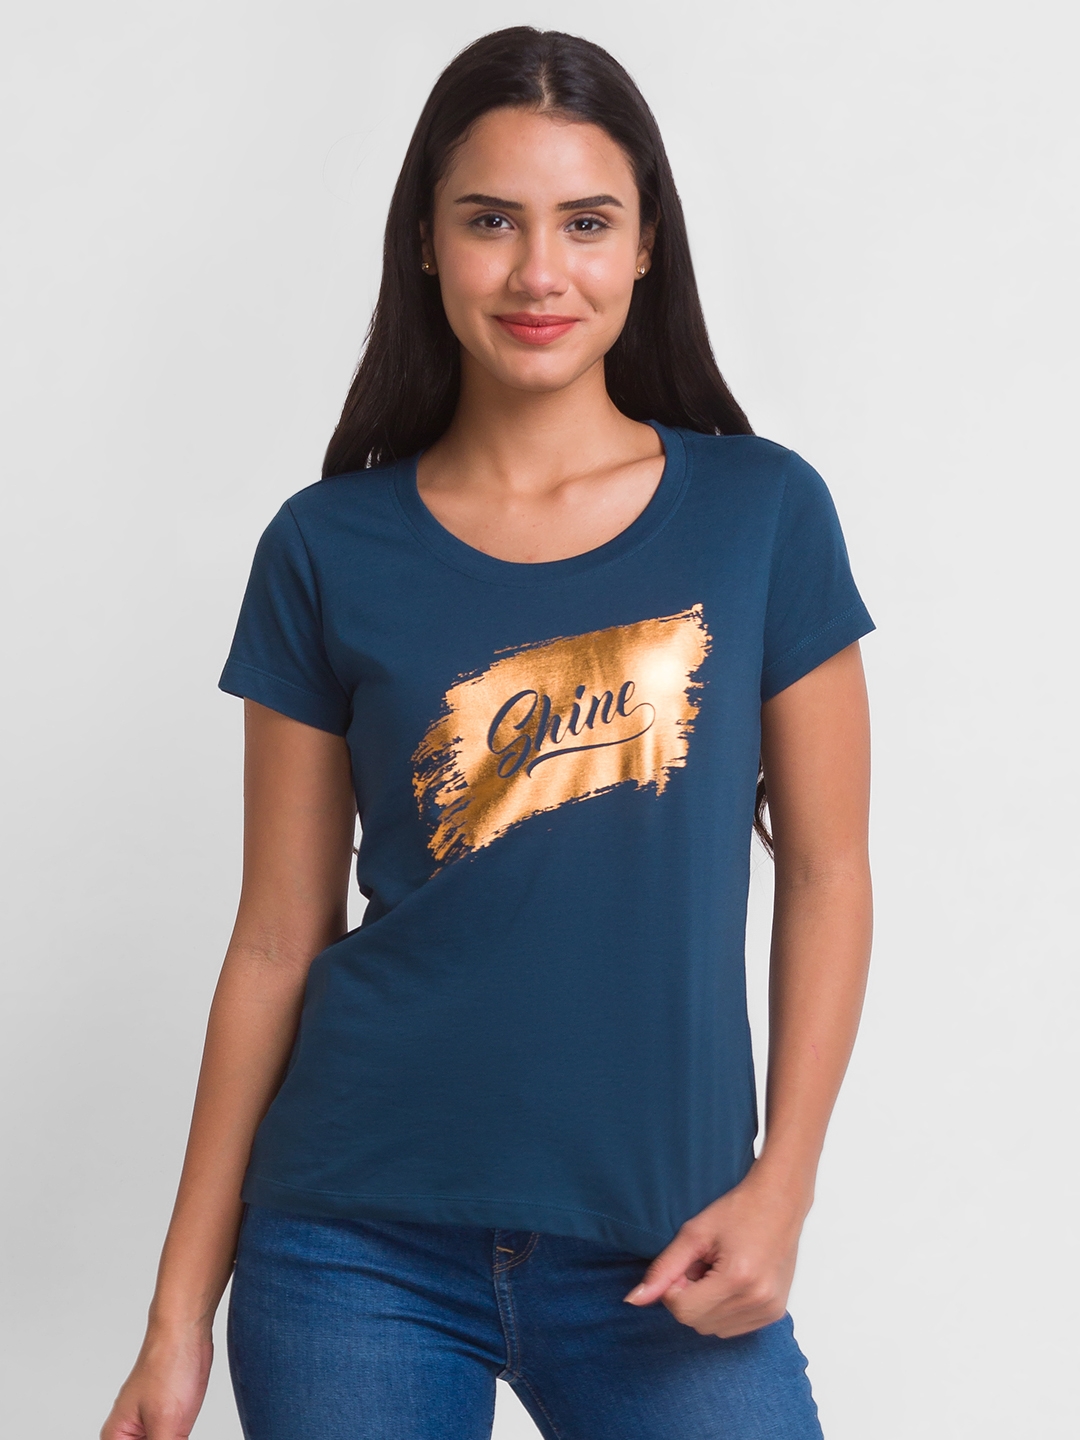 globus | Globus Teal Printed Tshirt